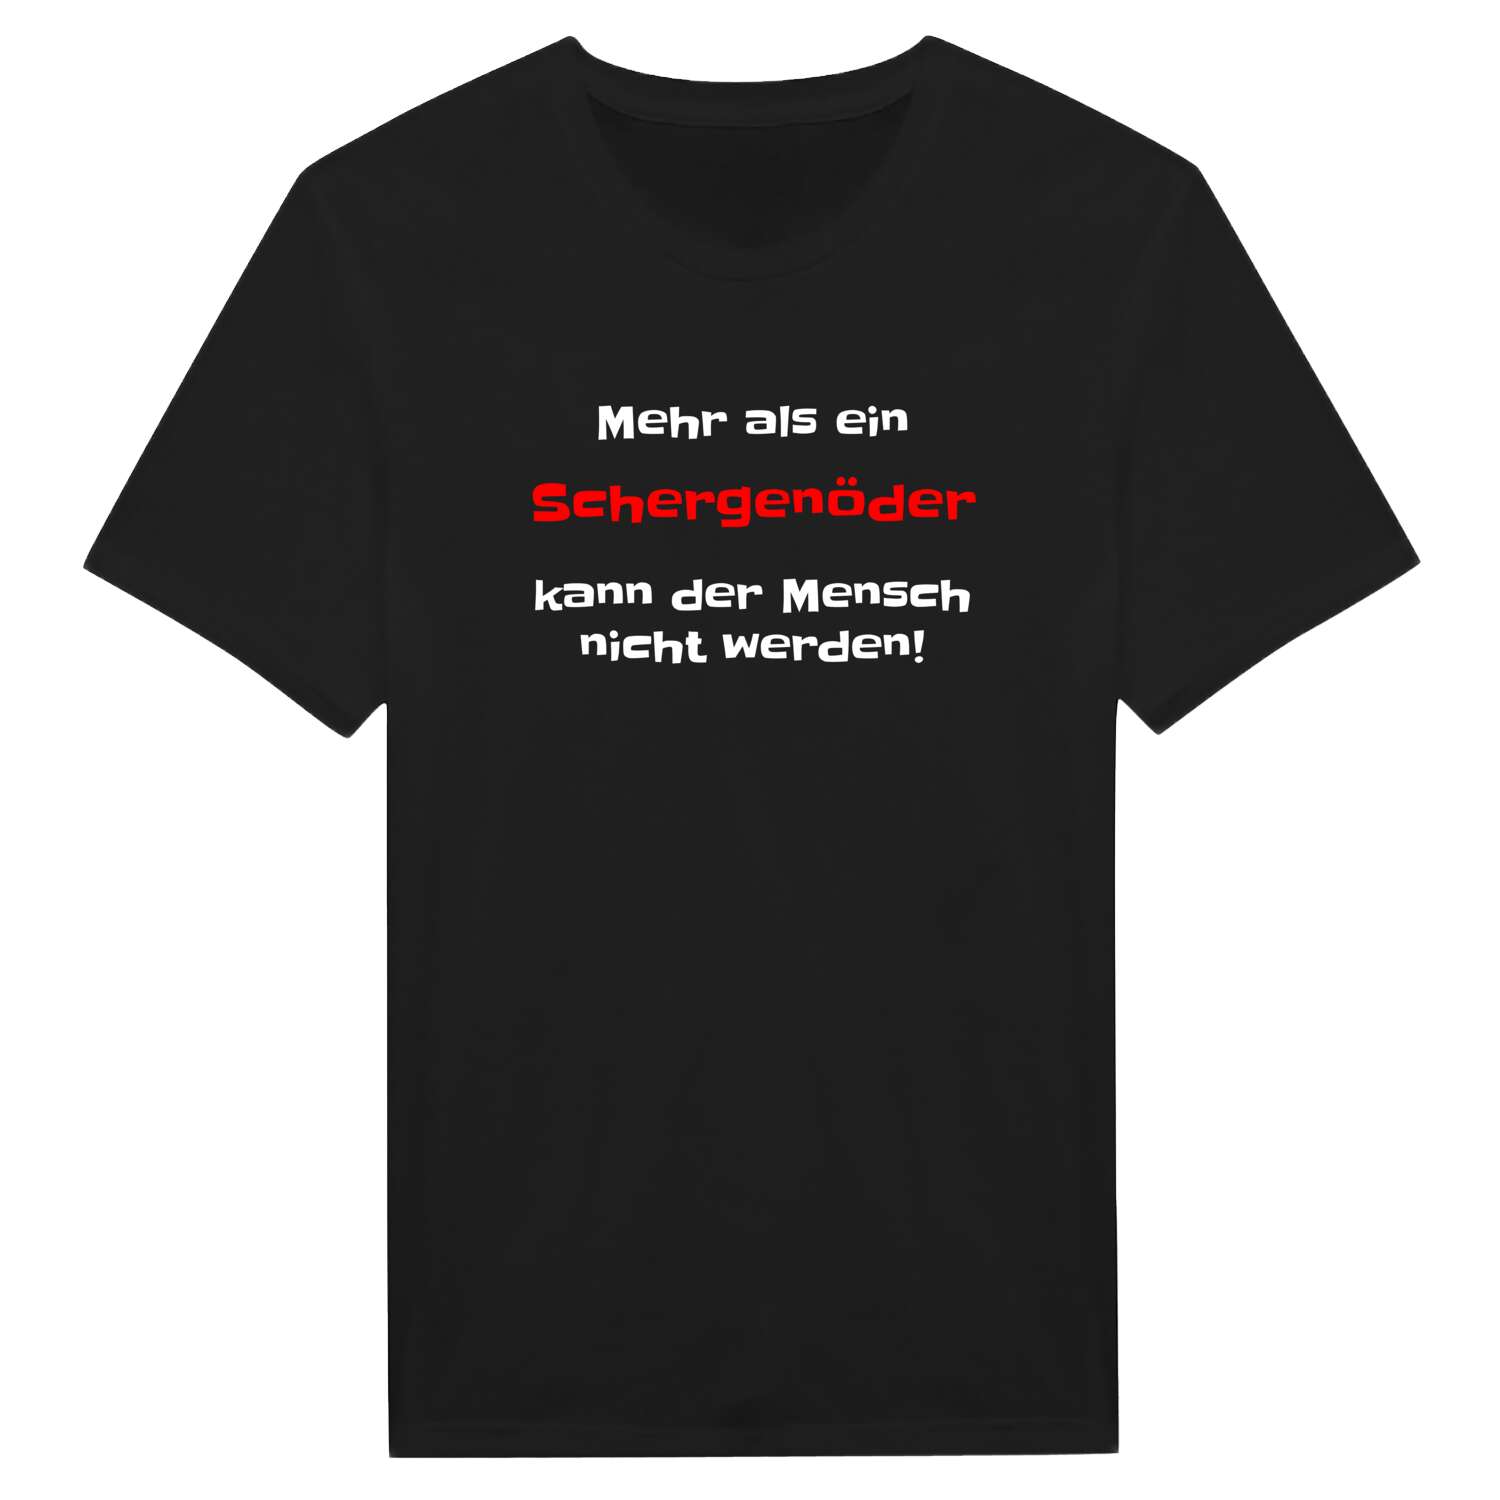 Schergenöd T-Shirt »Mehr als ein«